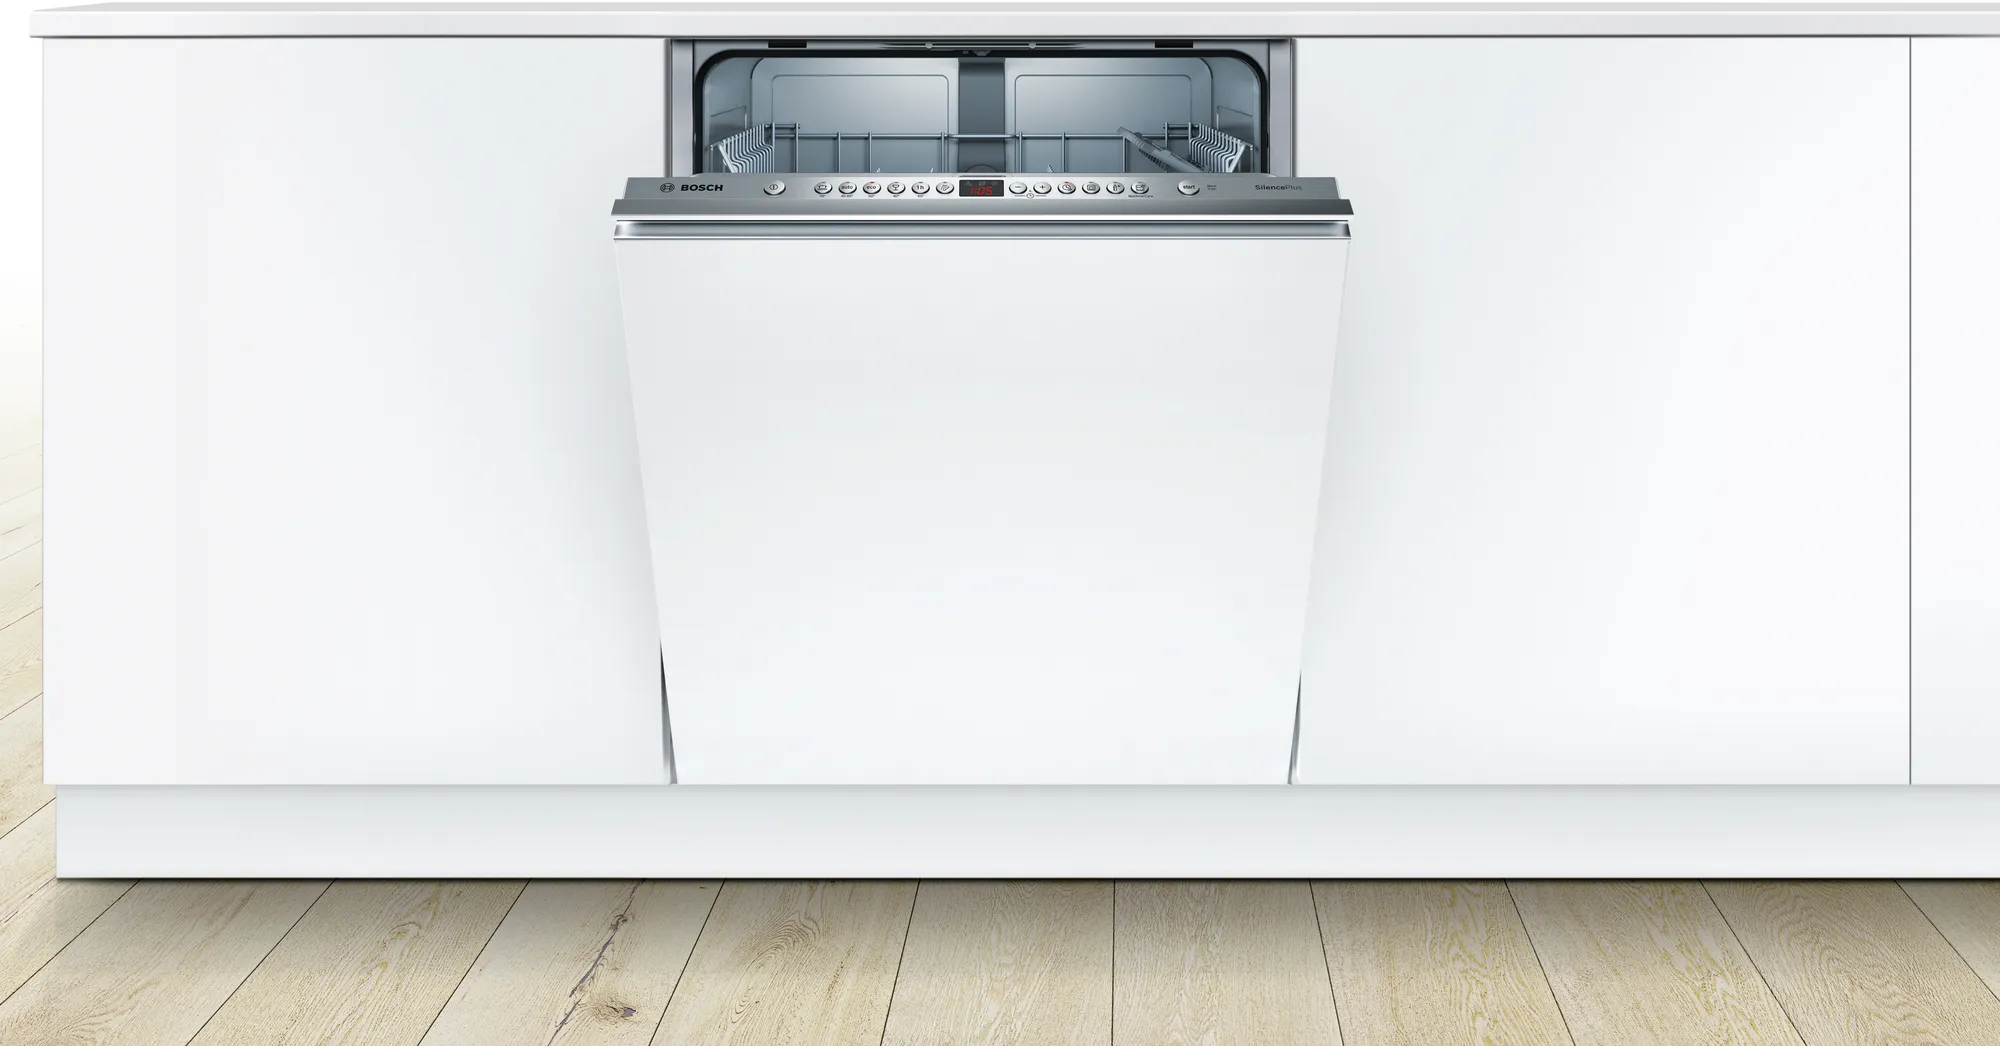 ماشین ظرفشویی توکار بوش مدل SMV46JX10Q